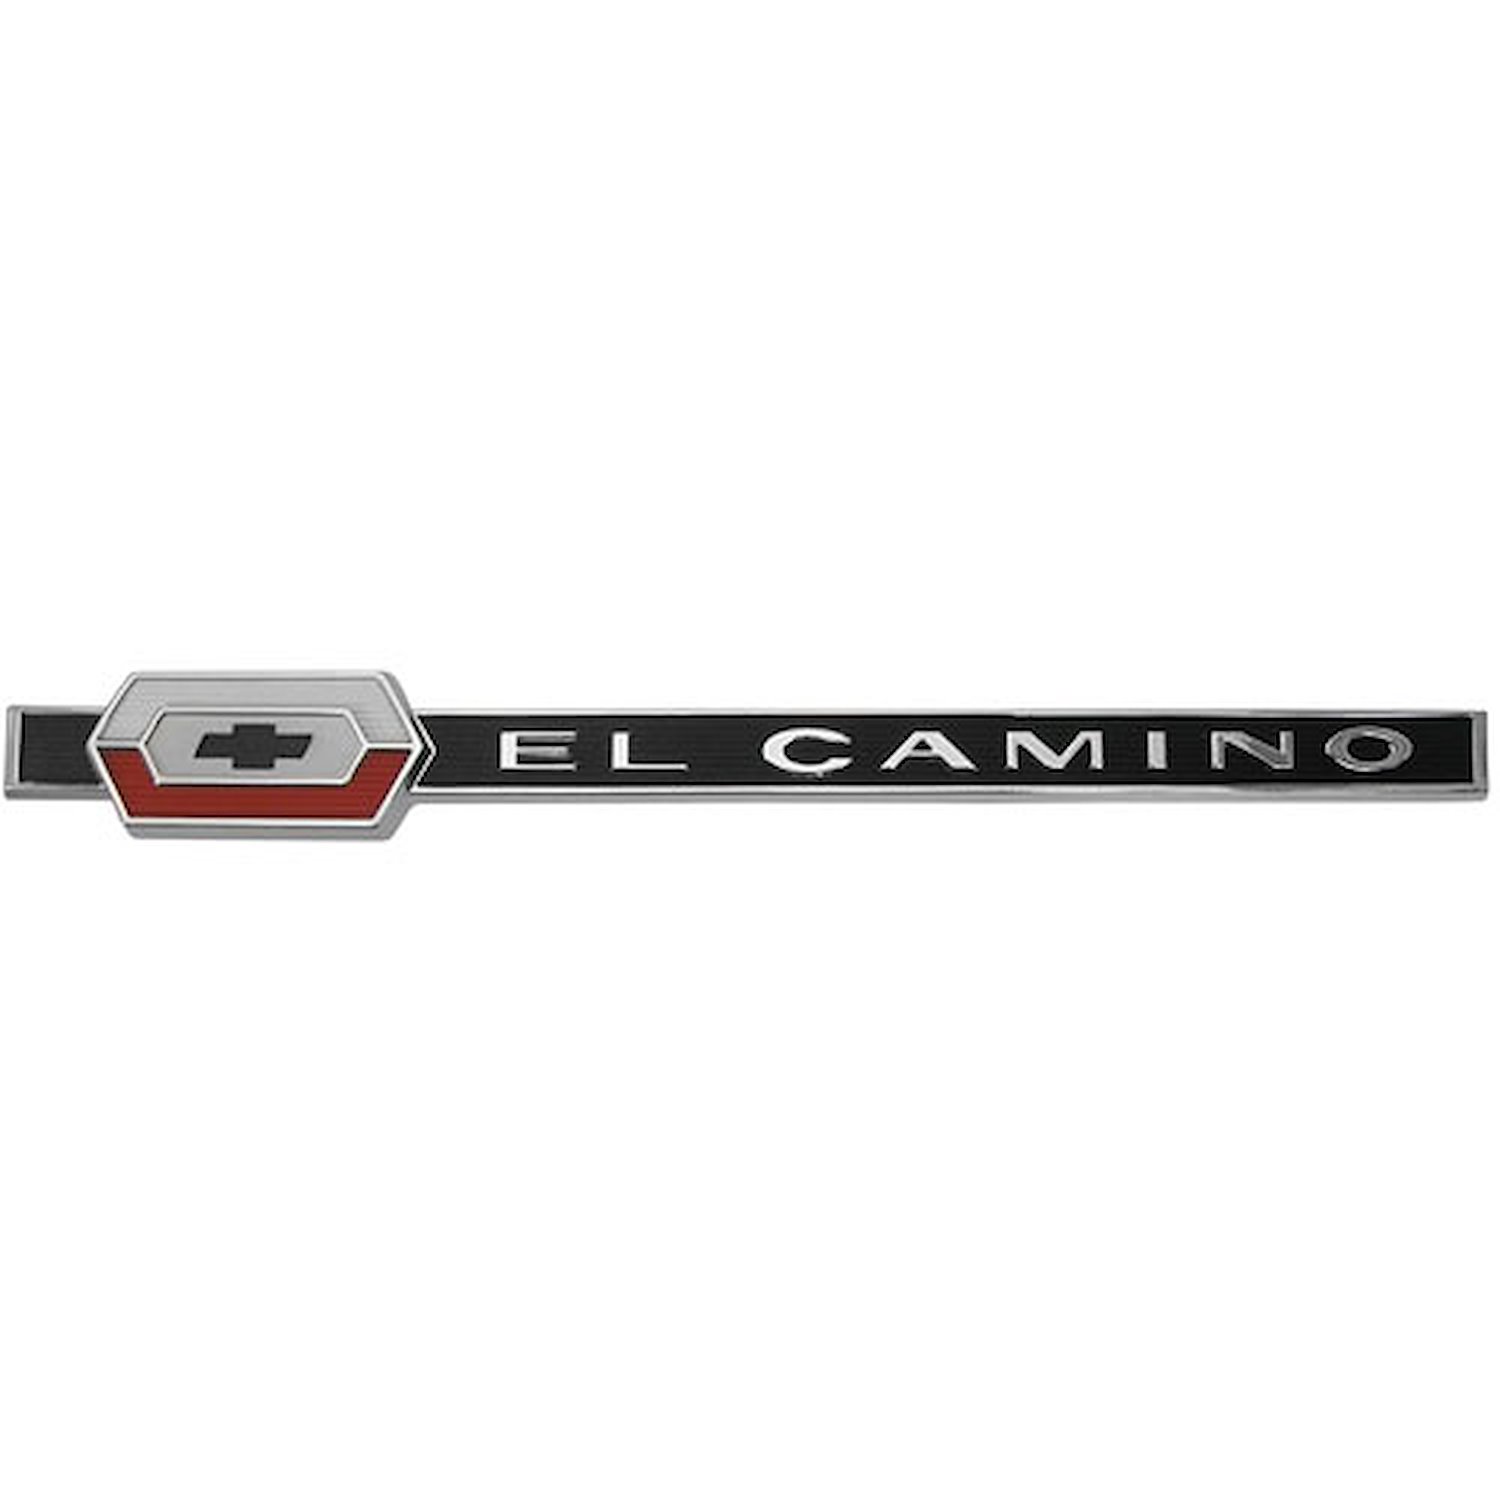 Rear Quarter Panel Emblem 1964 Chevy El Camino